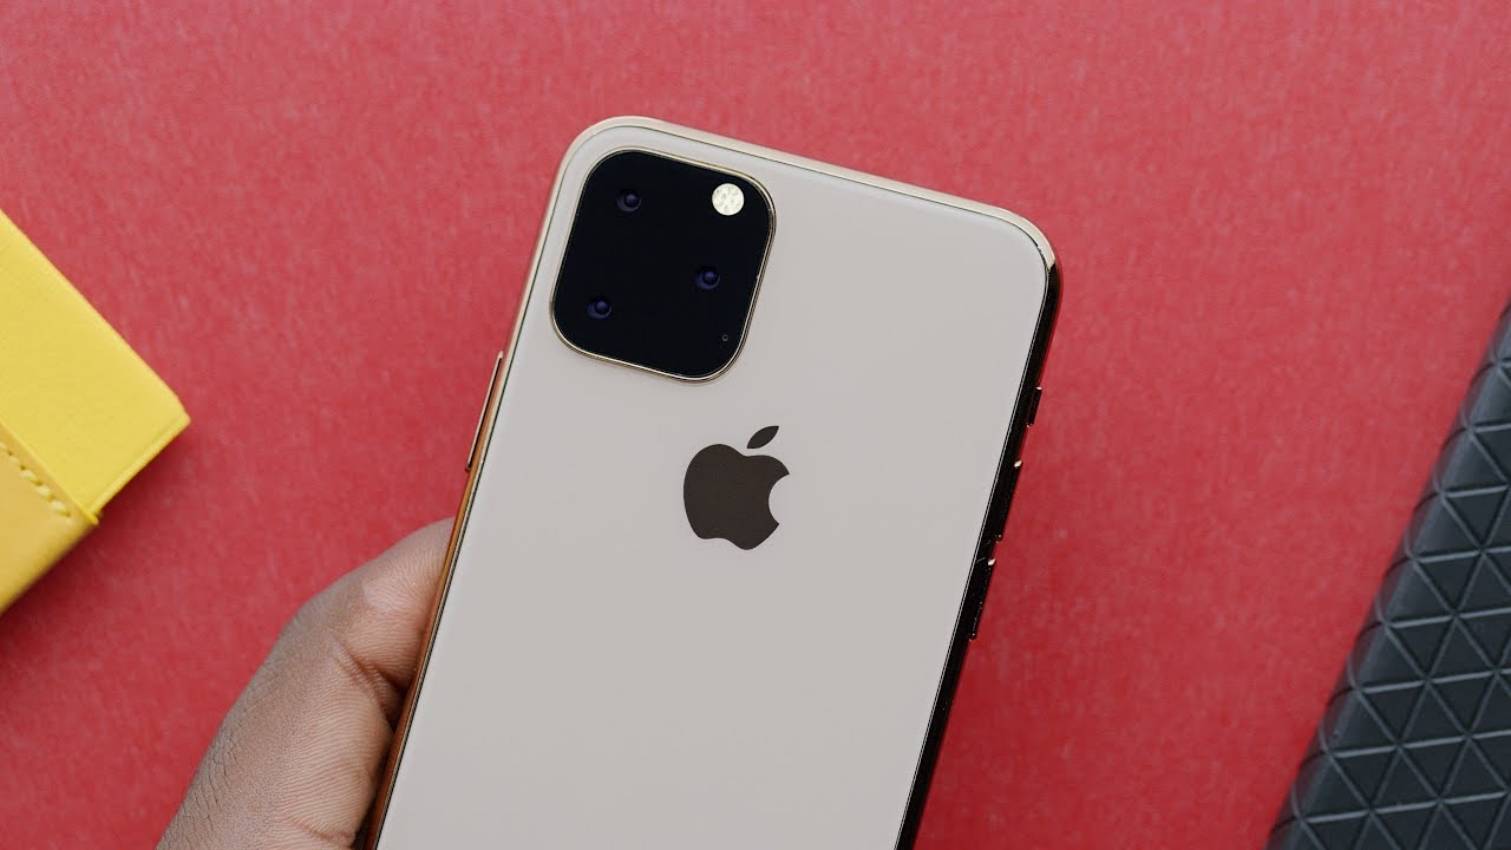 Waarom heeft de iPhone 11 het Apple-logo opnieuw in de hoes geplaatst?